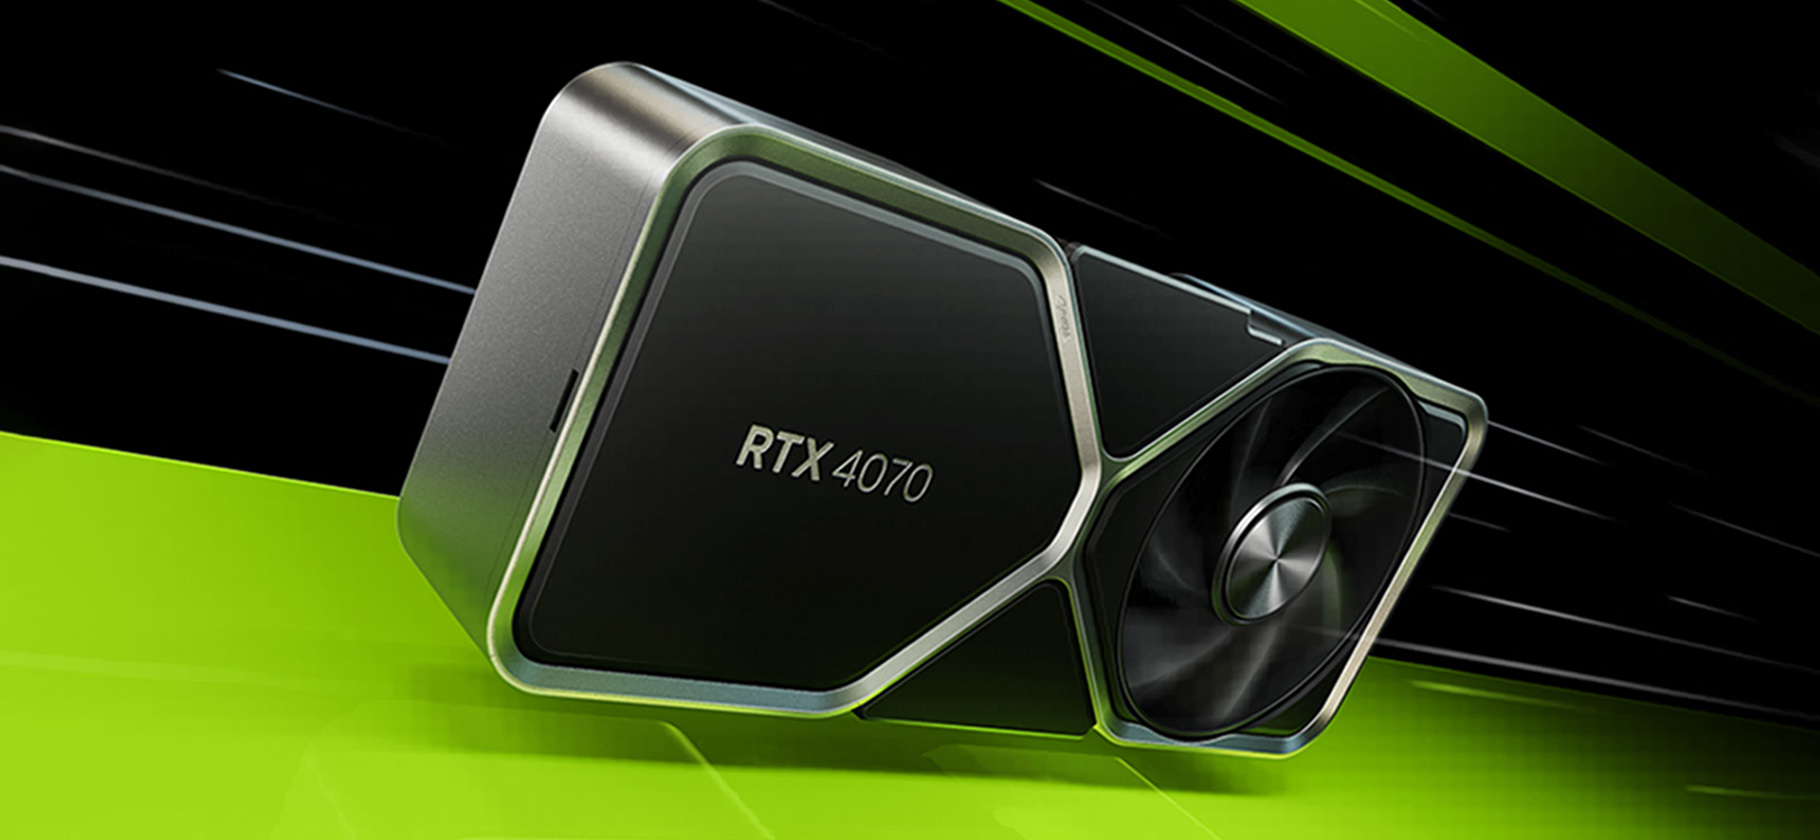 Главное о GeForce RTX 4070: сравнение версий, цены и характеристики